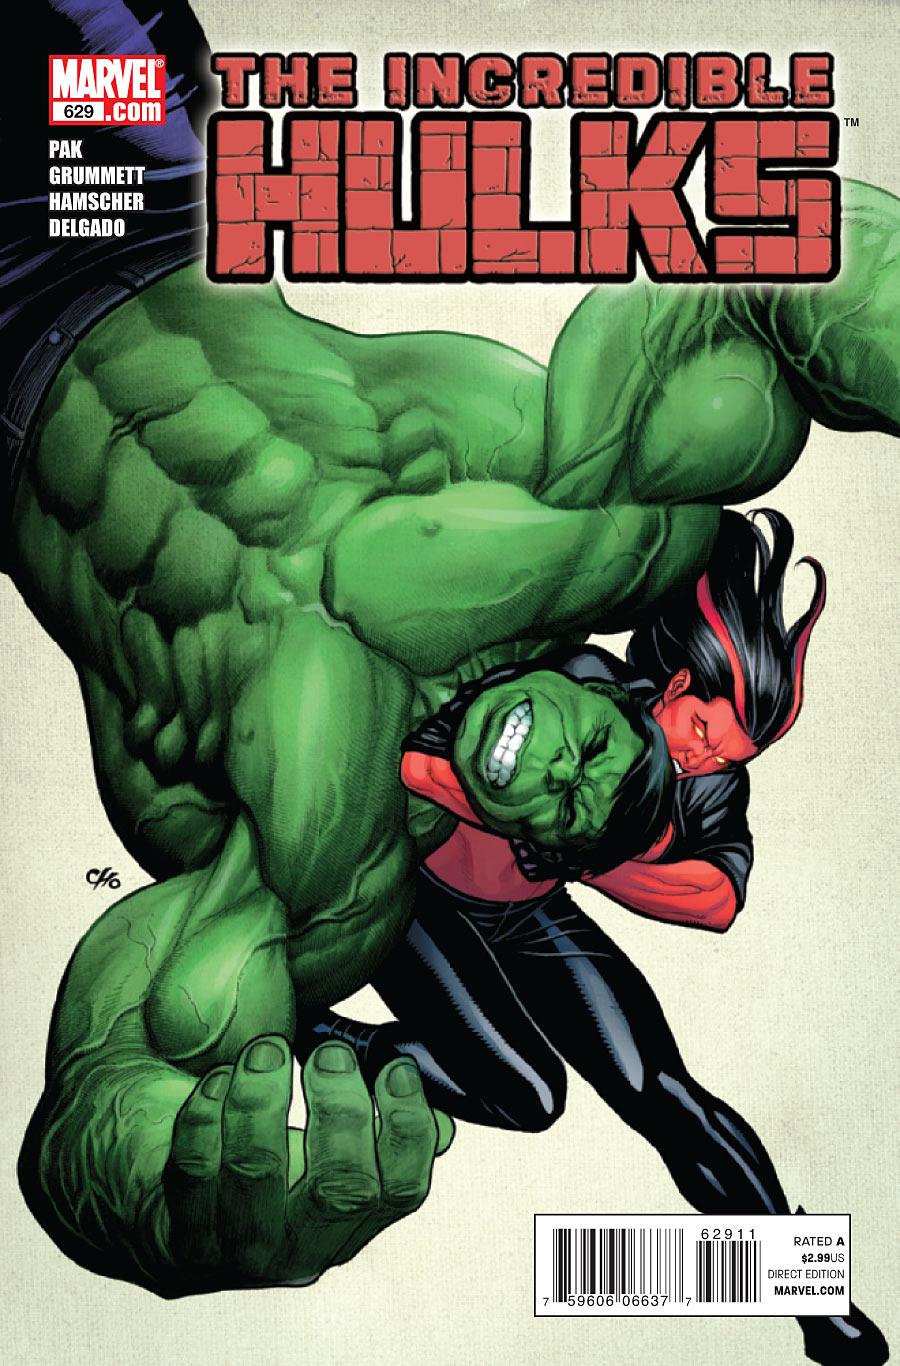 Incredible Hulks Vol. 1 #629